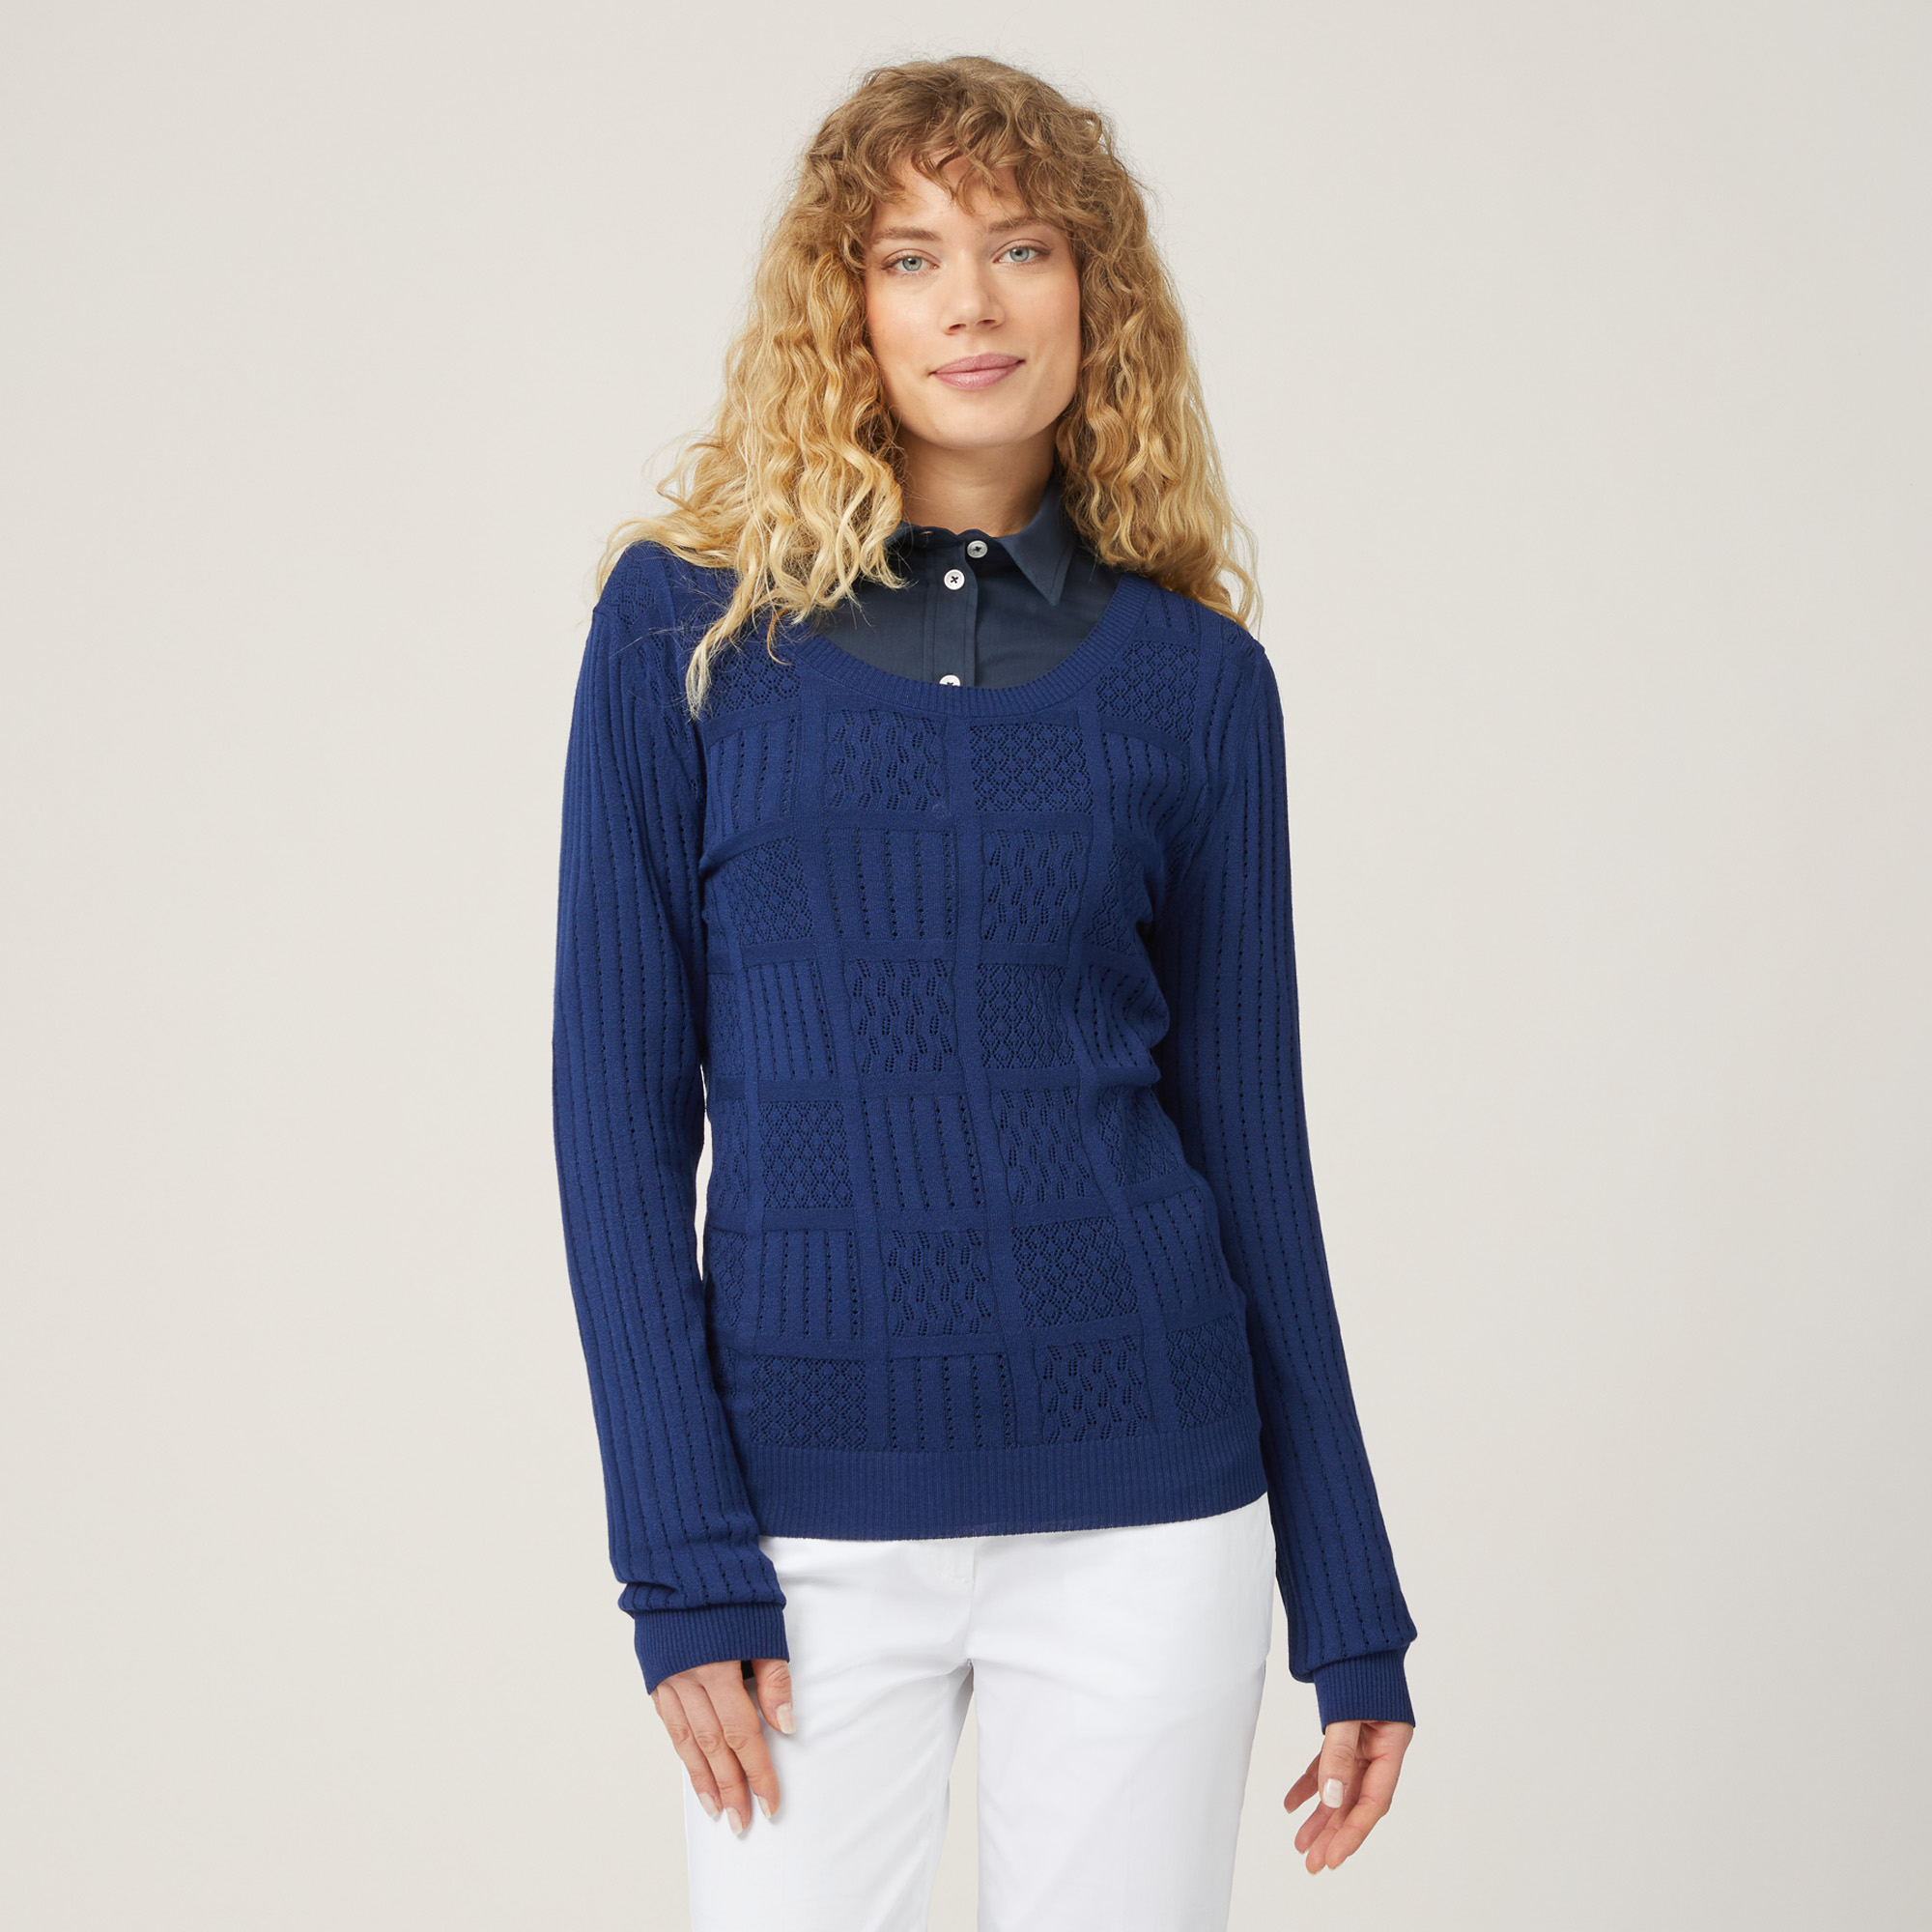 Mixed Stitch Sweater, Blue, large